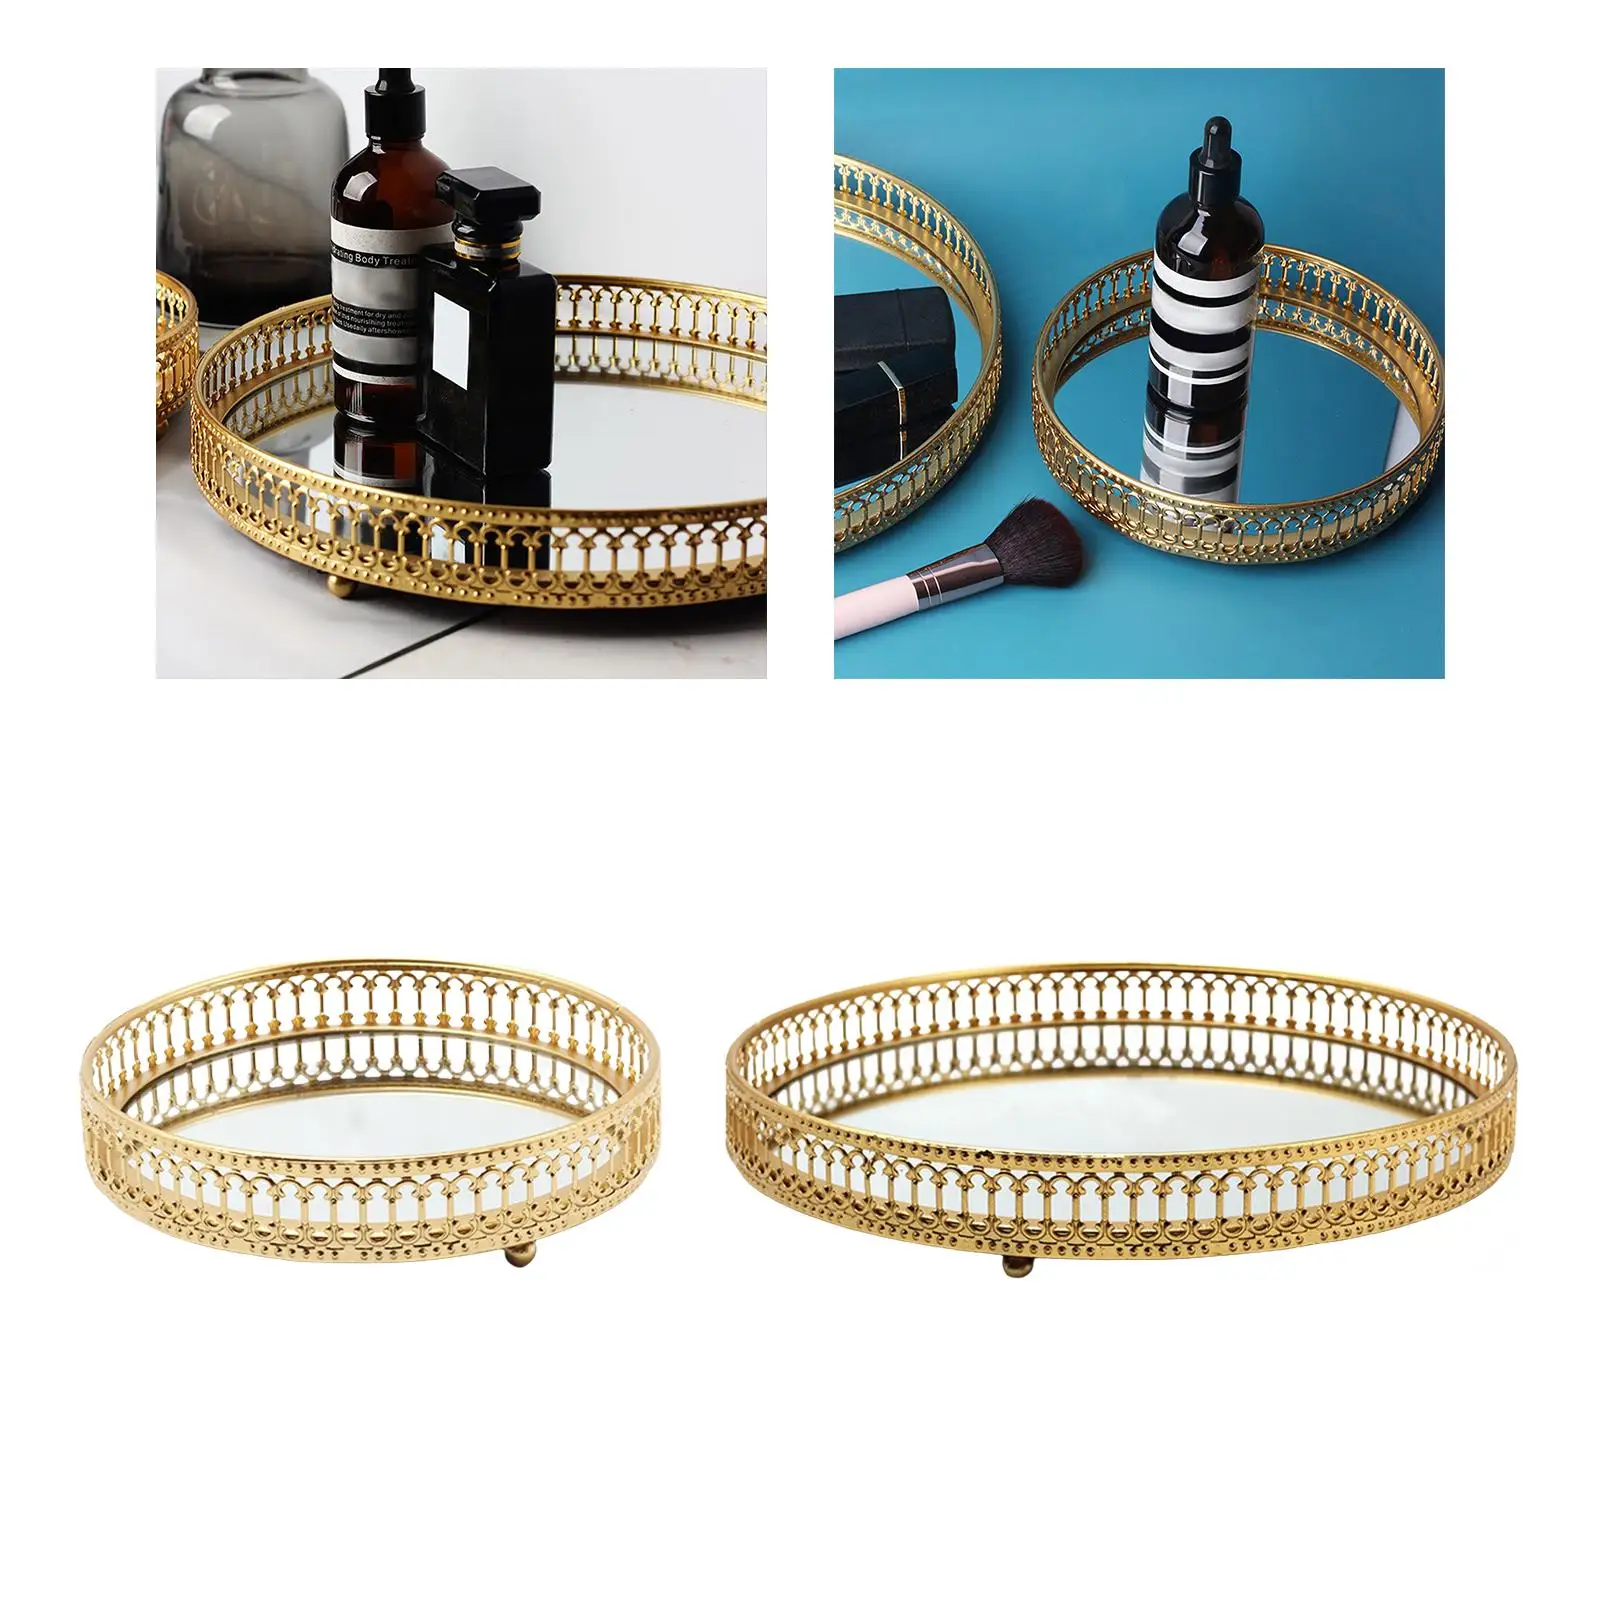 Jewelry Trinket Tray Round Dresser Tray Iron Storage Tray Decorative Tray Organizer for Cosmetic Necklace